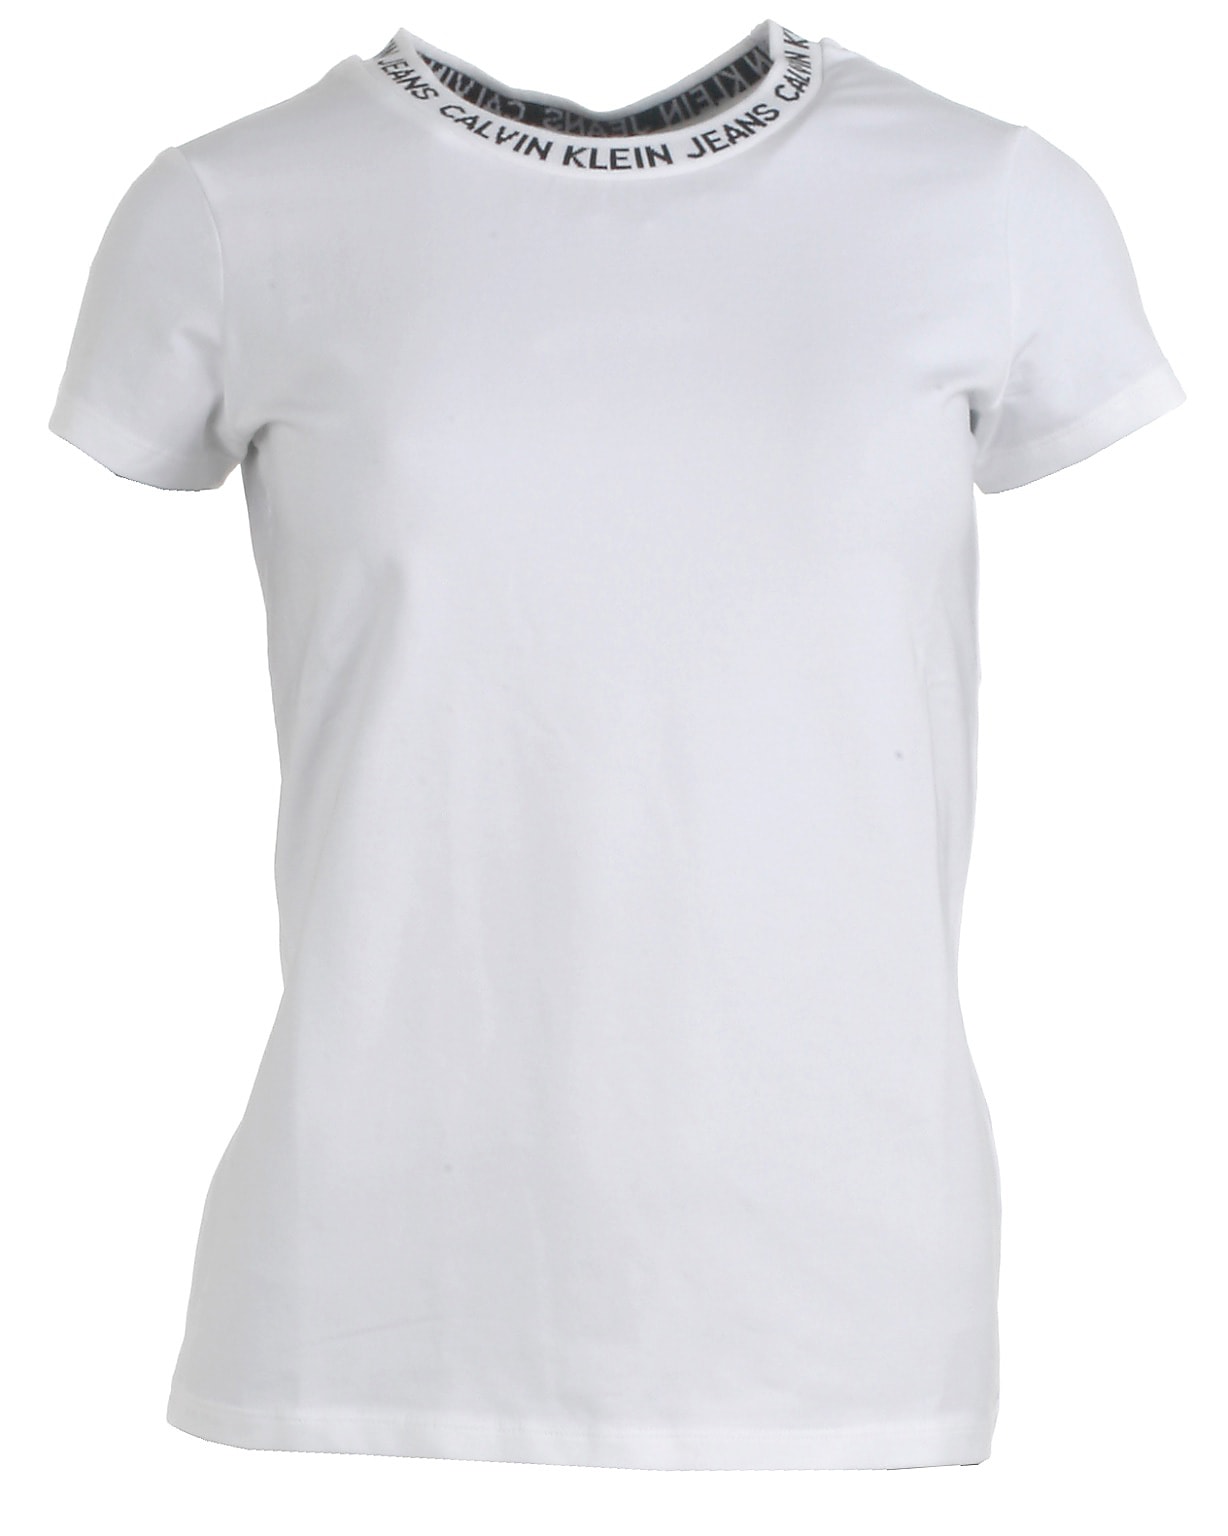 Calvin Klein t-shirt s/s, Logo, hvid - 140,10år